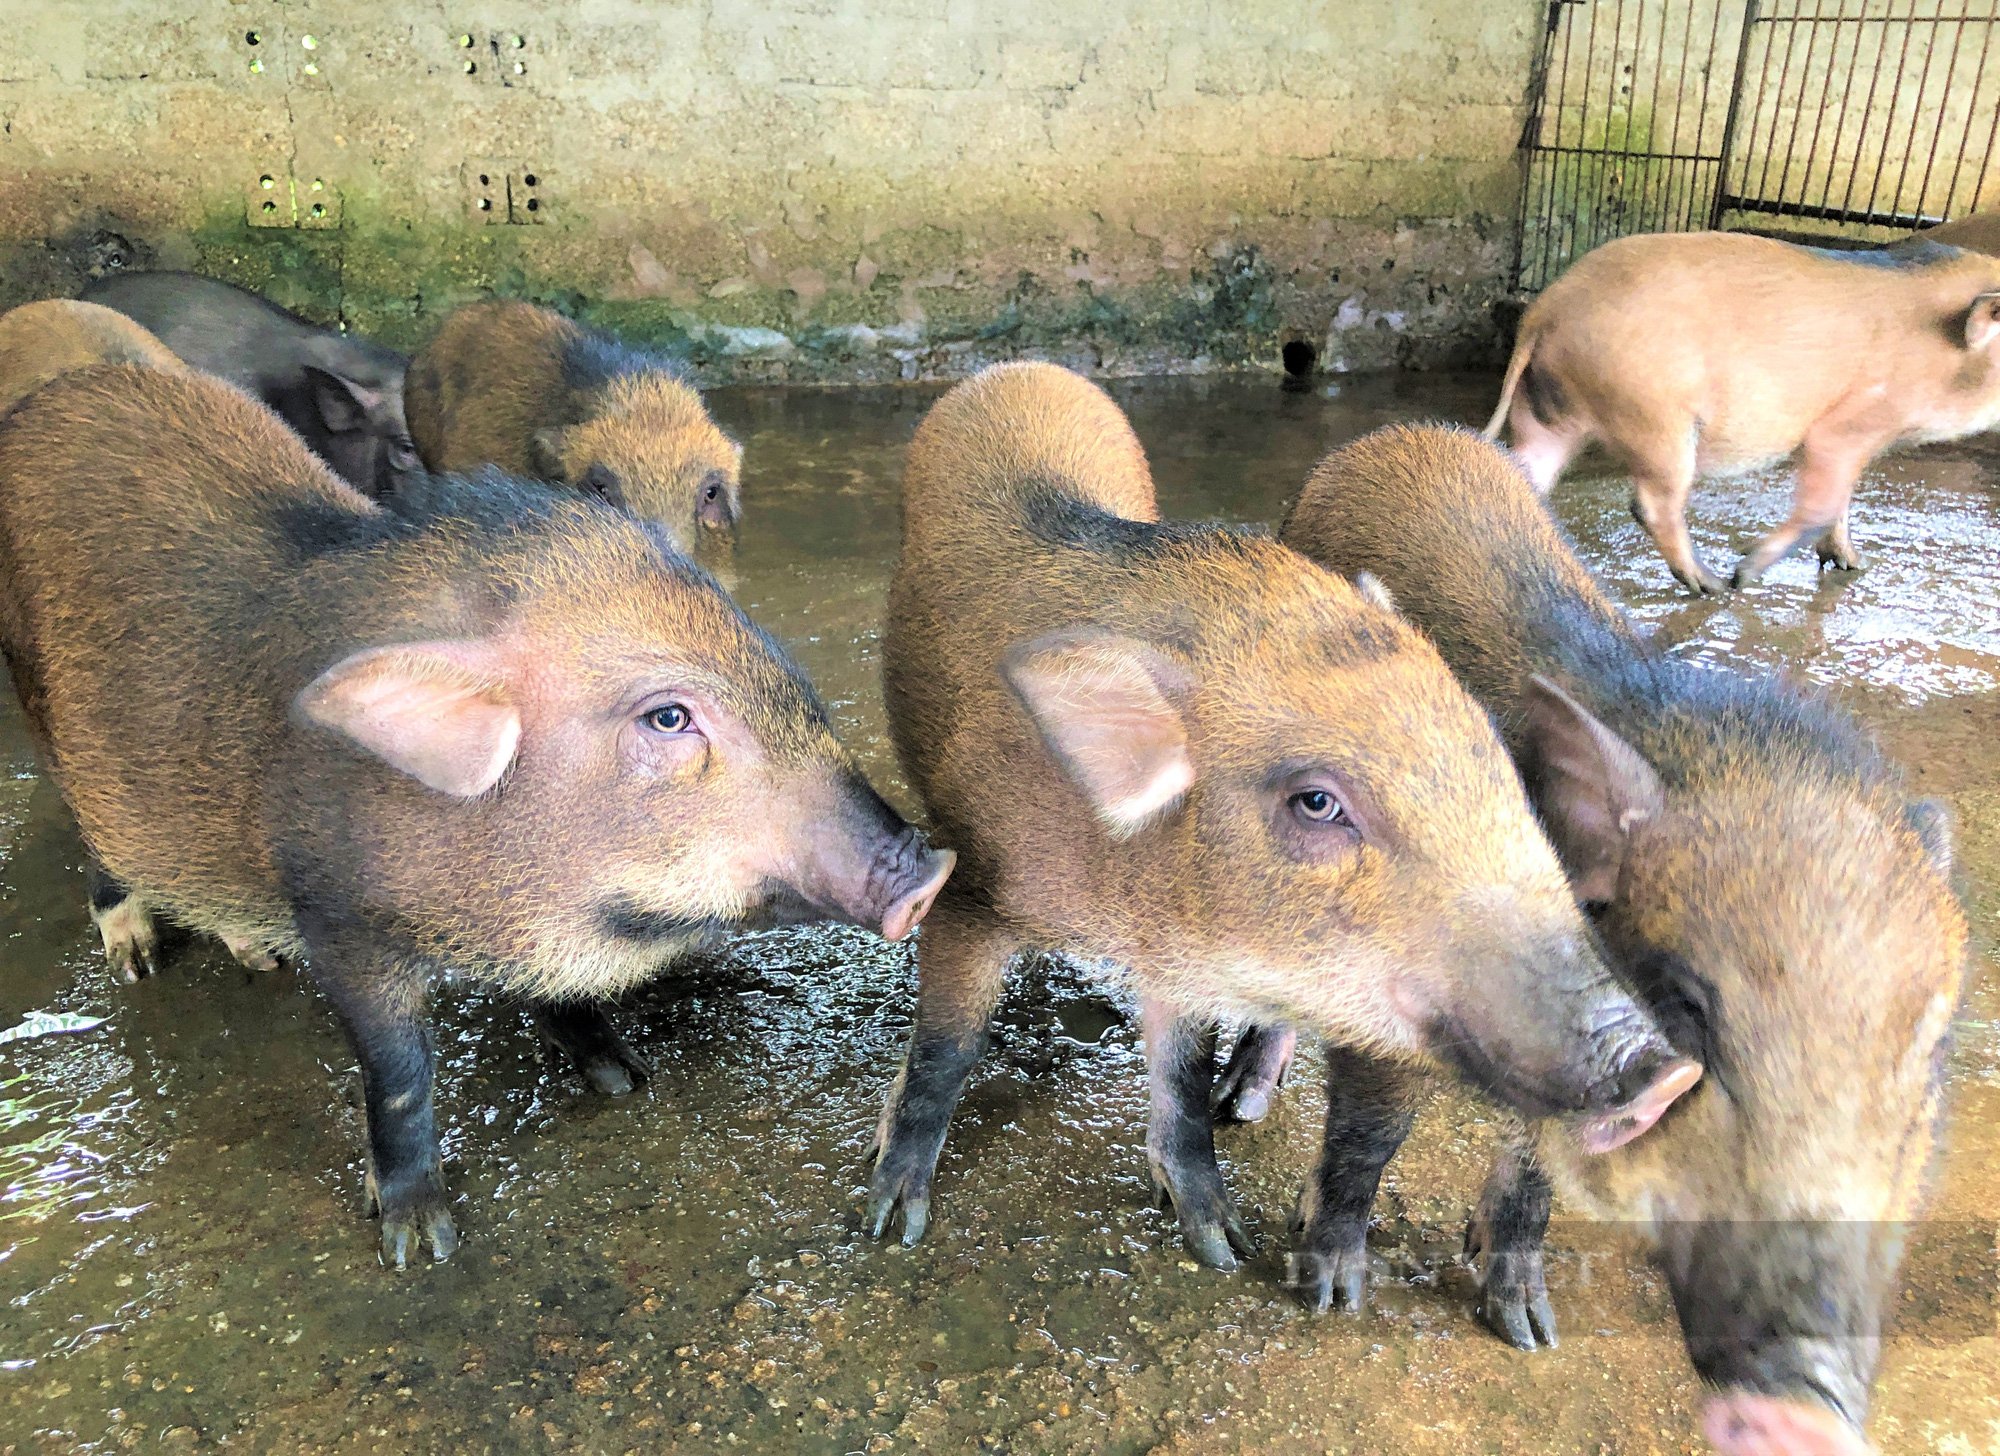 Nông dân Hà Tĩnh nuôi lợn rừng bằng thảo dược, miễn nhiễm dịch bệnh, bỏ túi hàng trăm triệu đồng mỗi năm - Ảnh 5.